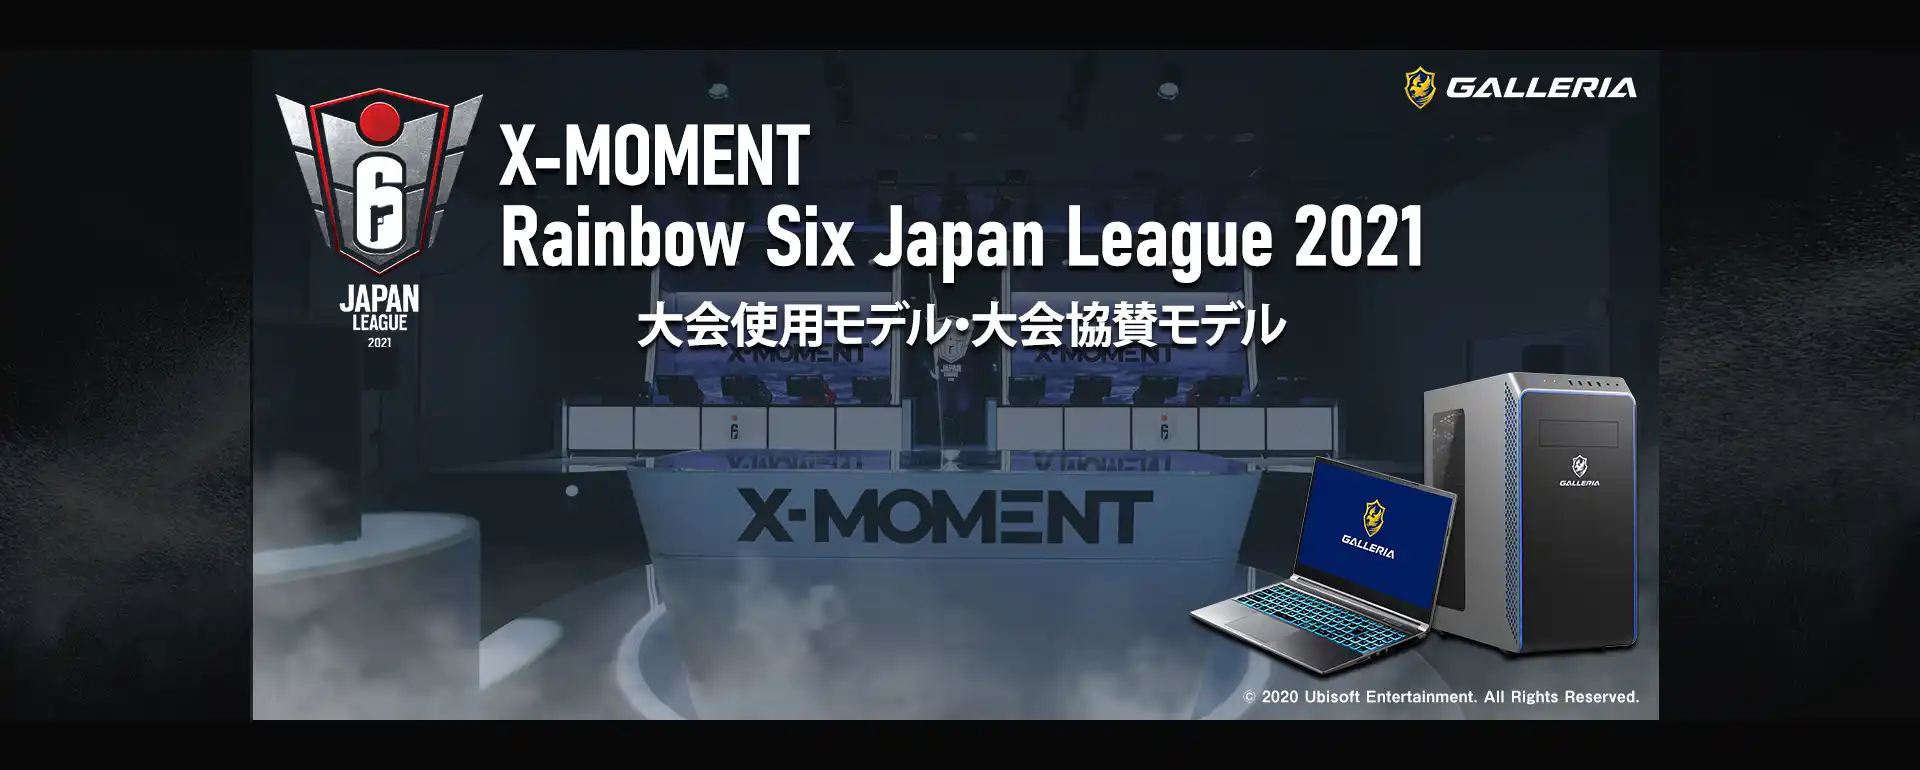 Rainbow Six Japan League 2021